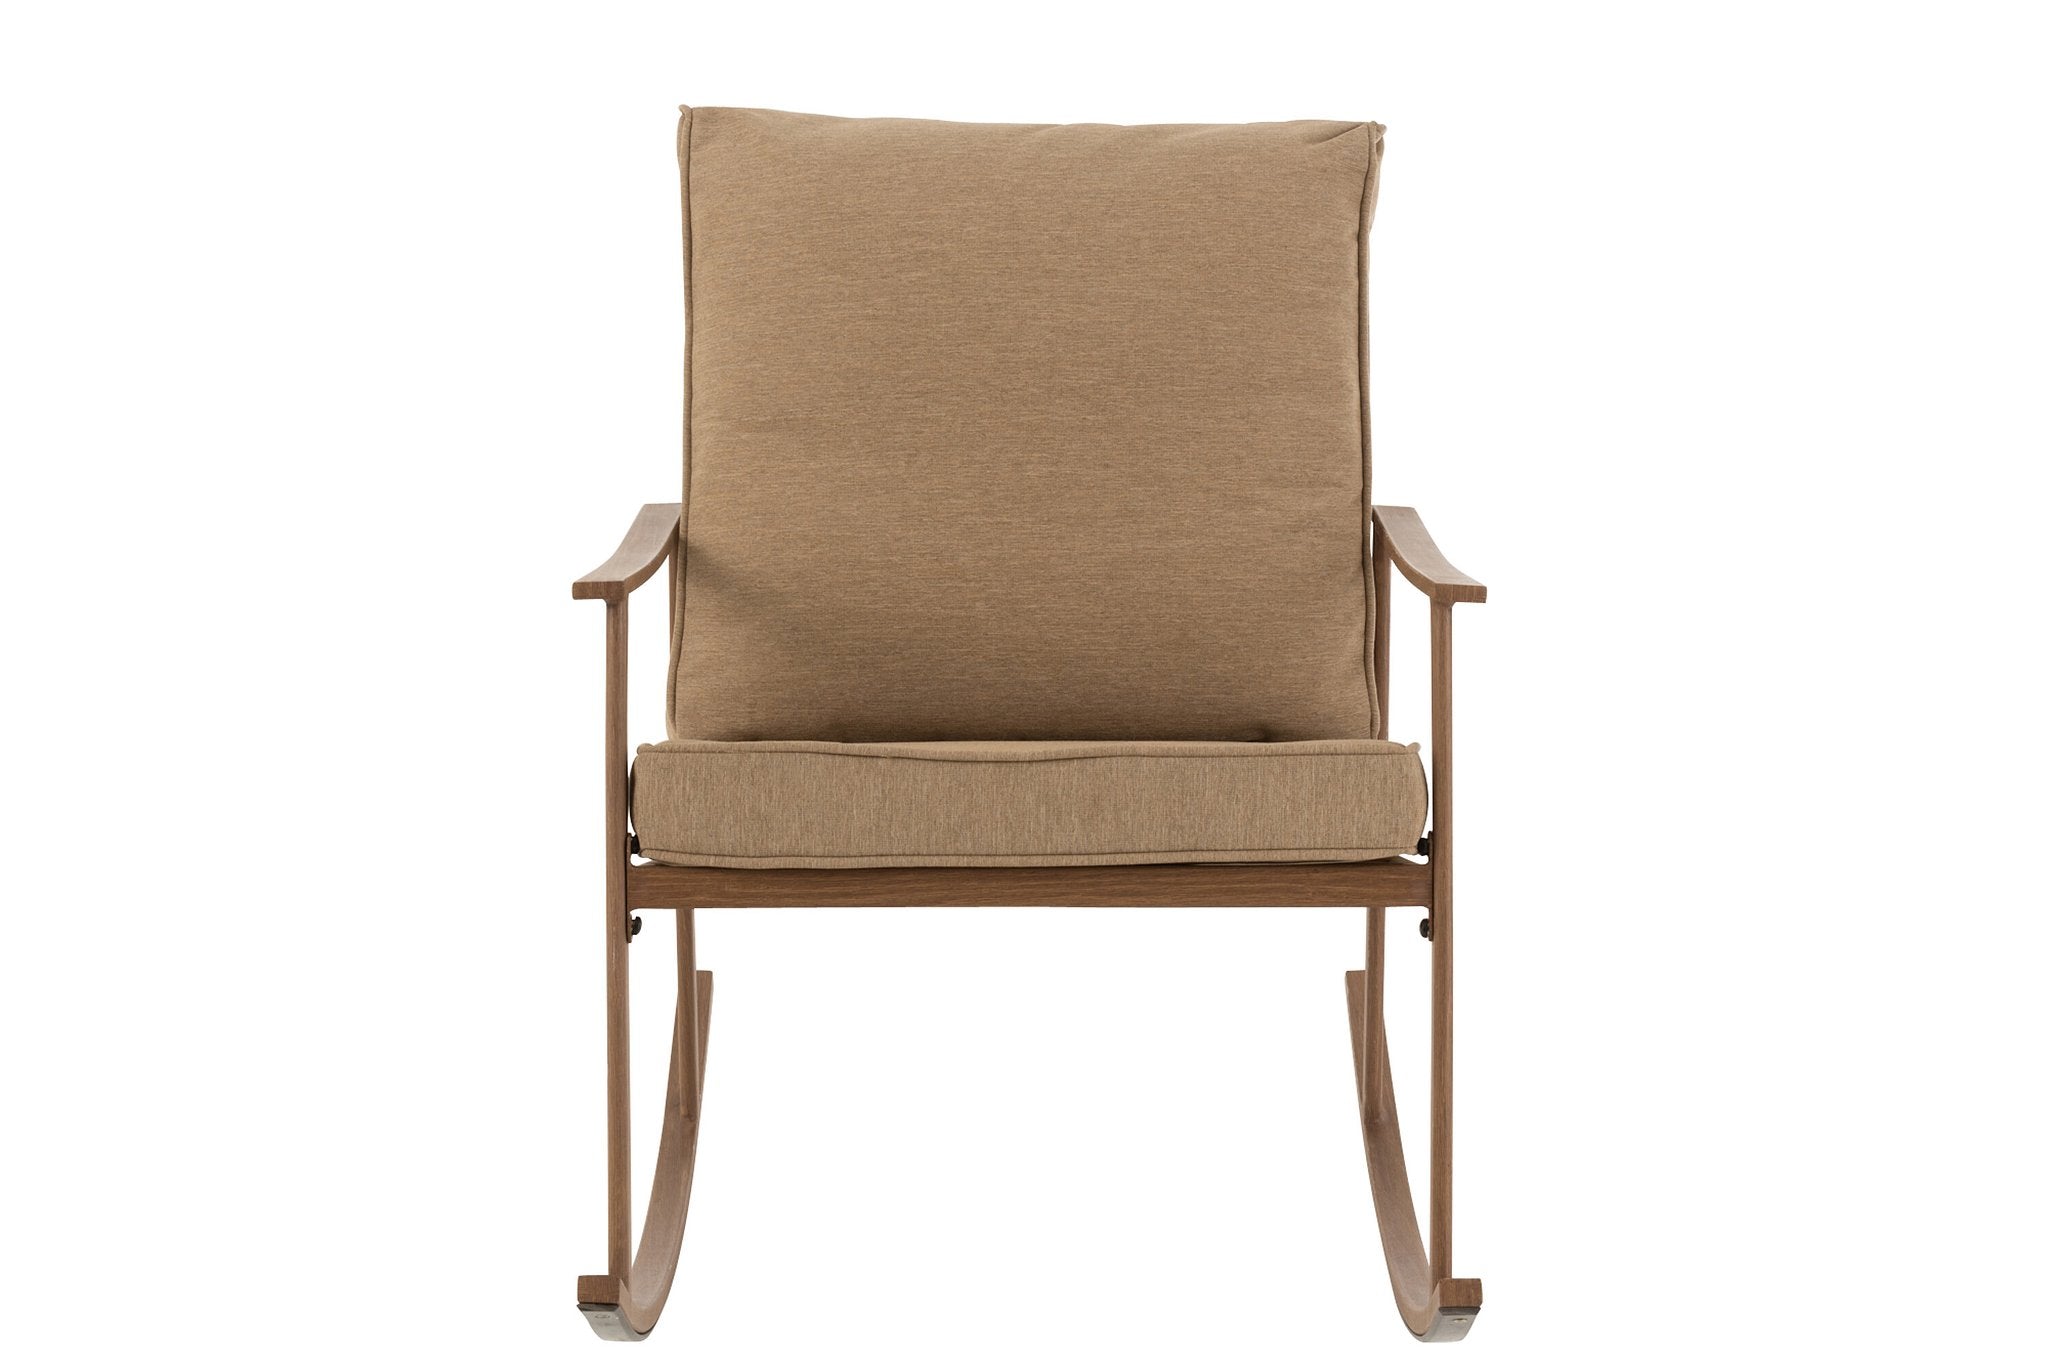 J-Line schommelstoel - metaal/textiel - beige/donkerbruin